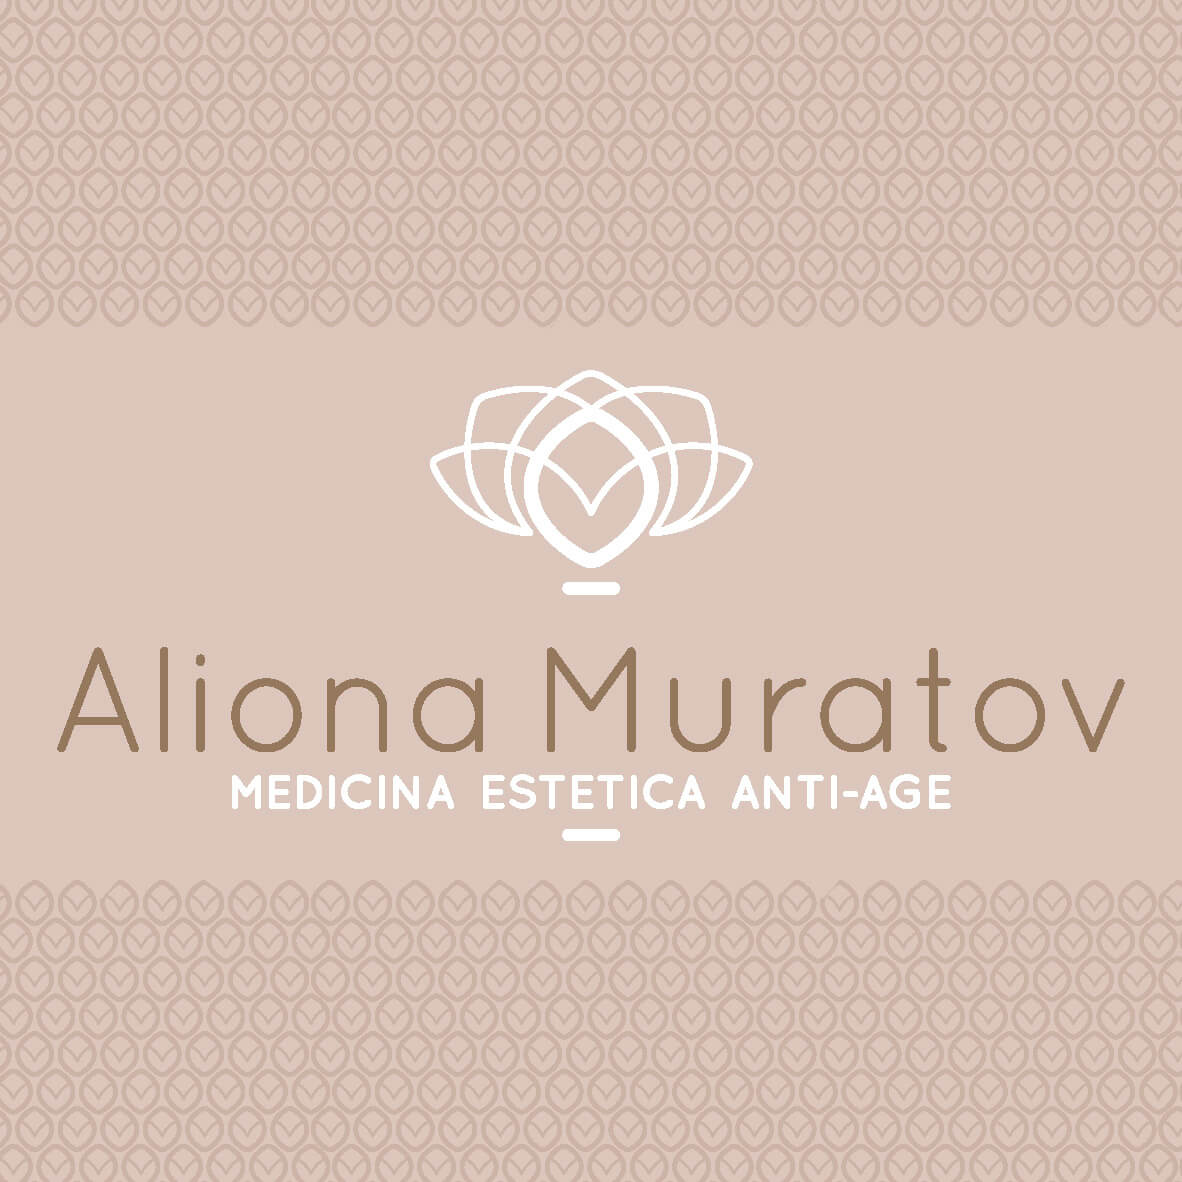 ALIONA MURATOV